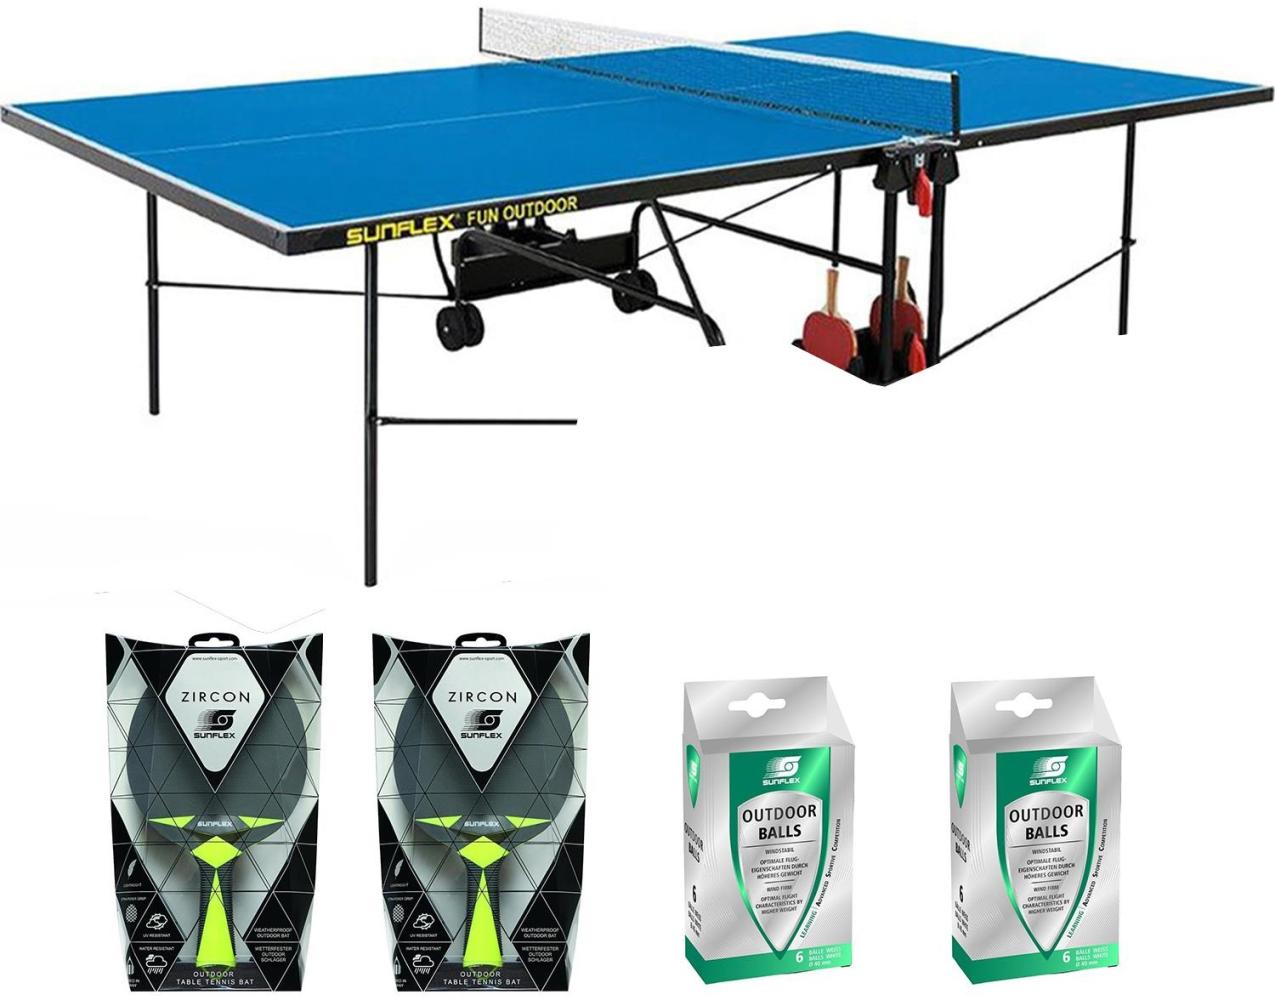 Sunflex Tischtennisplatte Outdoor blau + Netz + Tischtennisschläger + Tischtennisbälle Bild 1